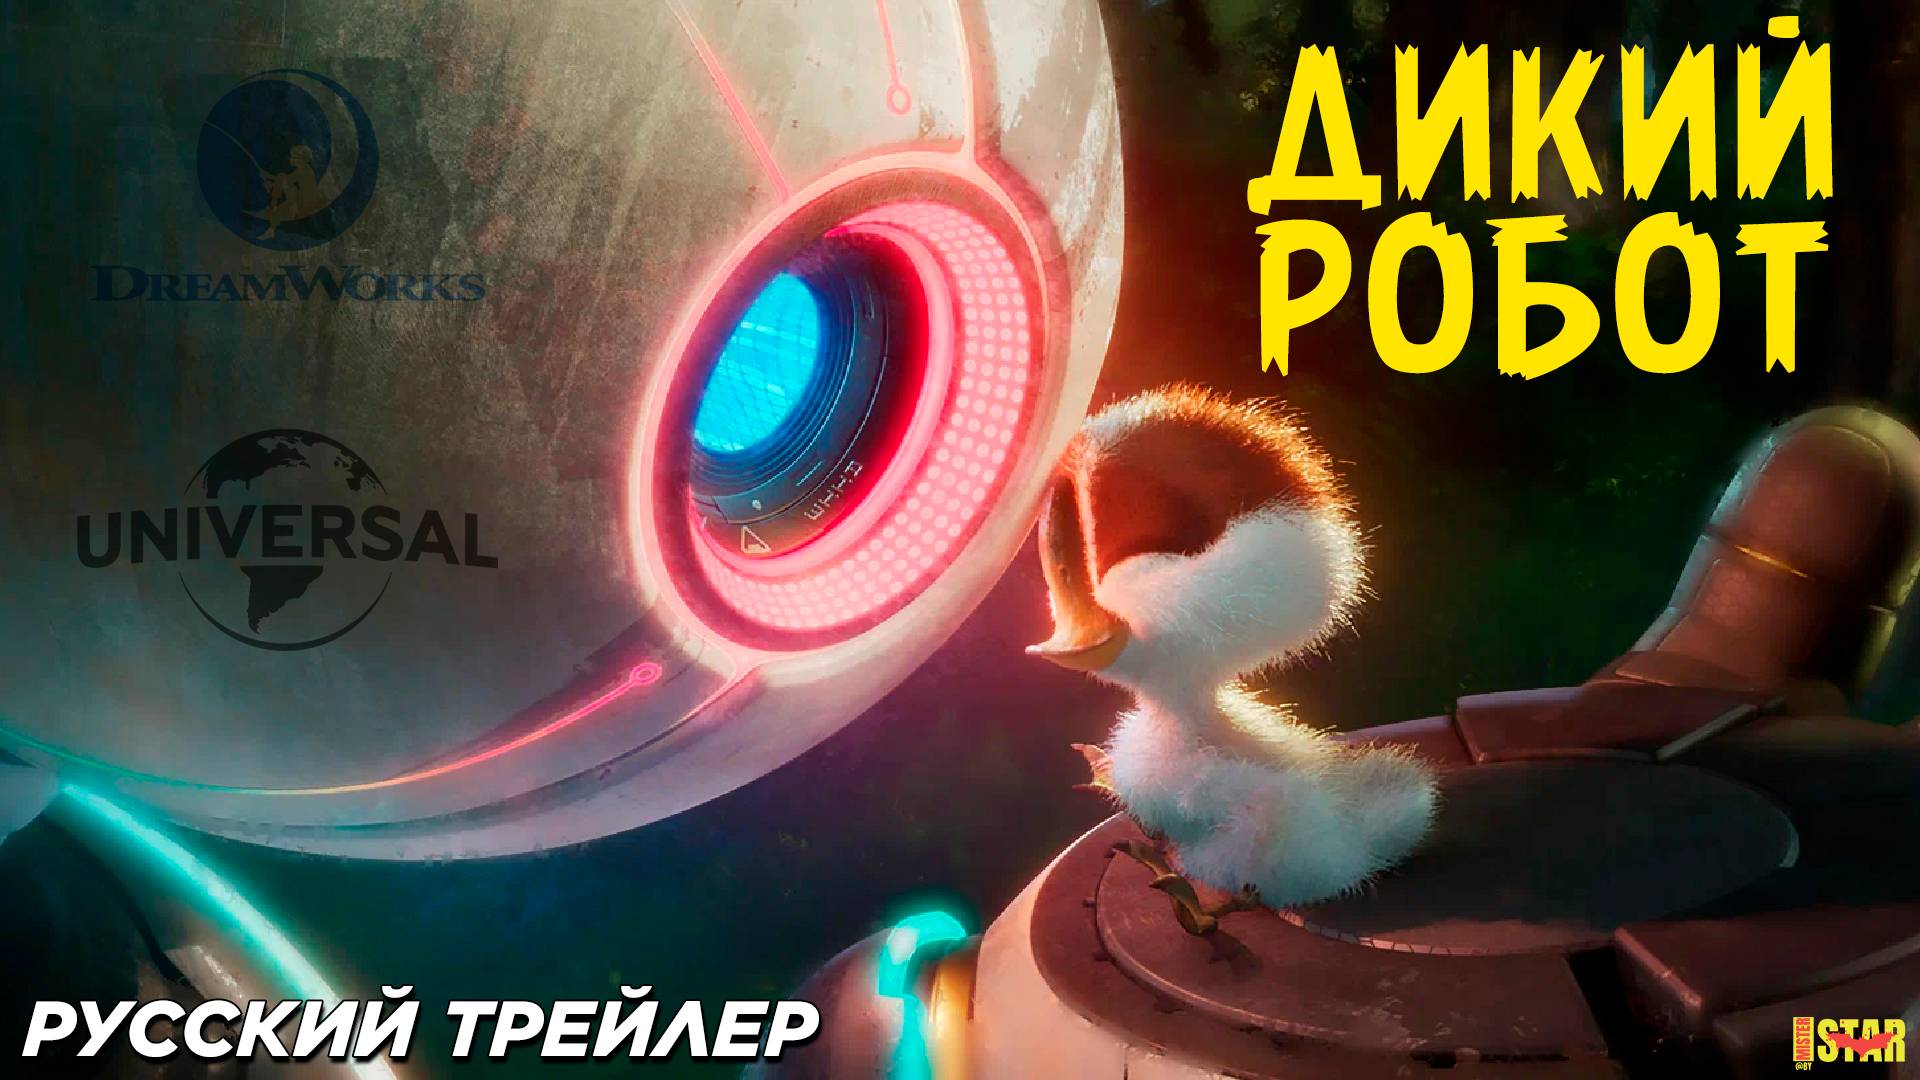 Дикий робот (2024) | Русский дублированный трейлер #2 (6+) |  DreamWorks Animation